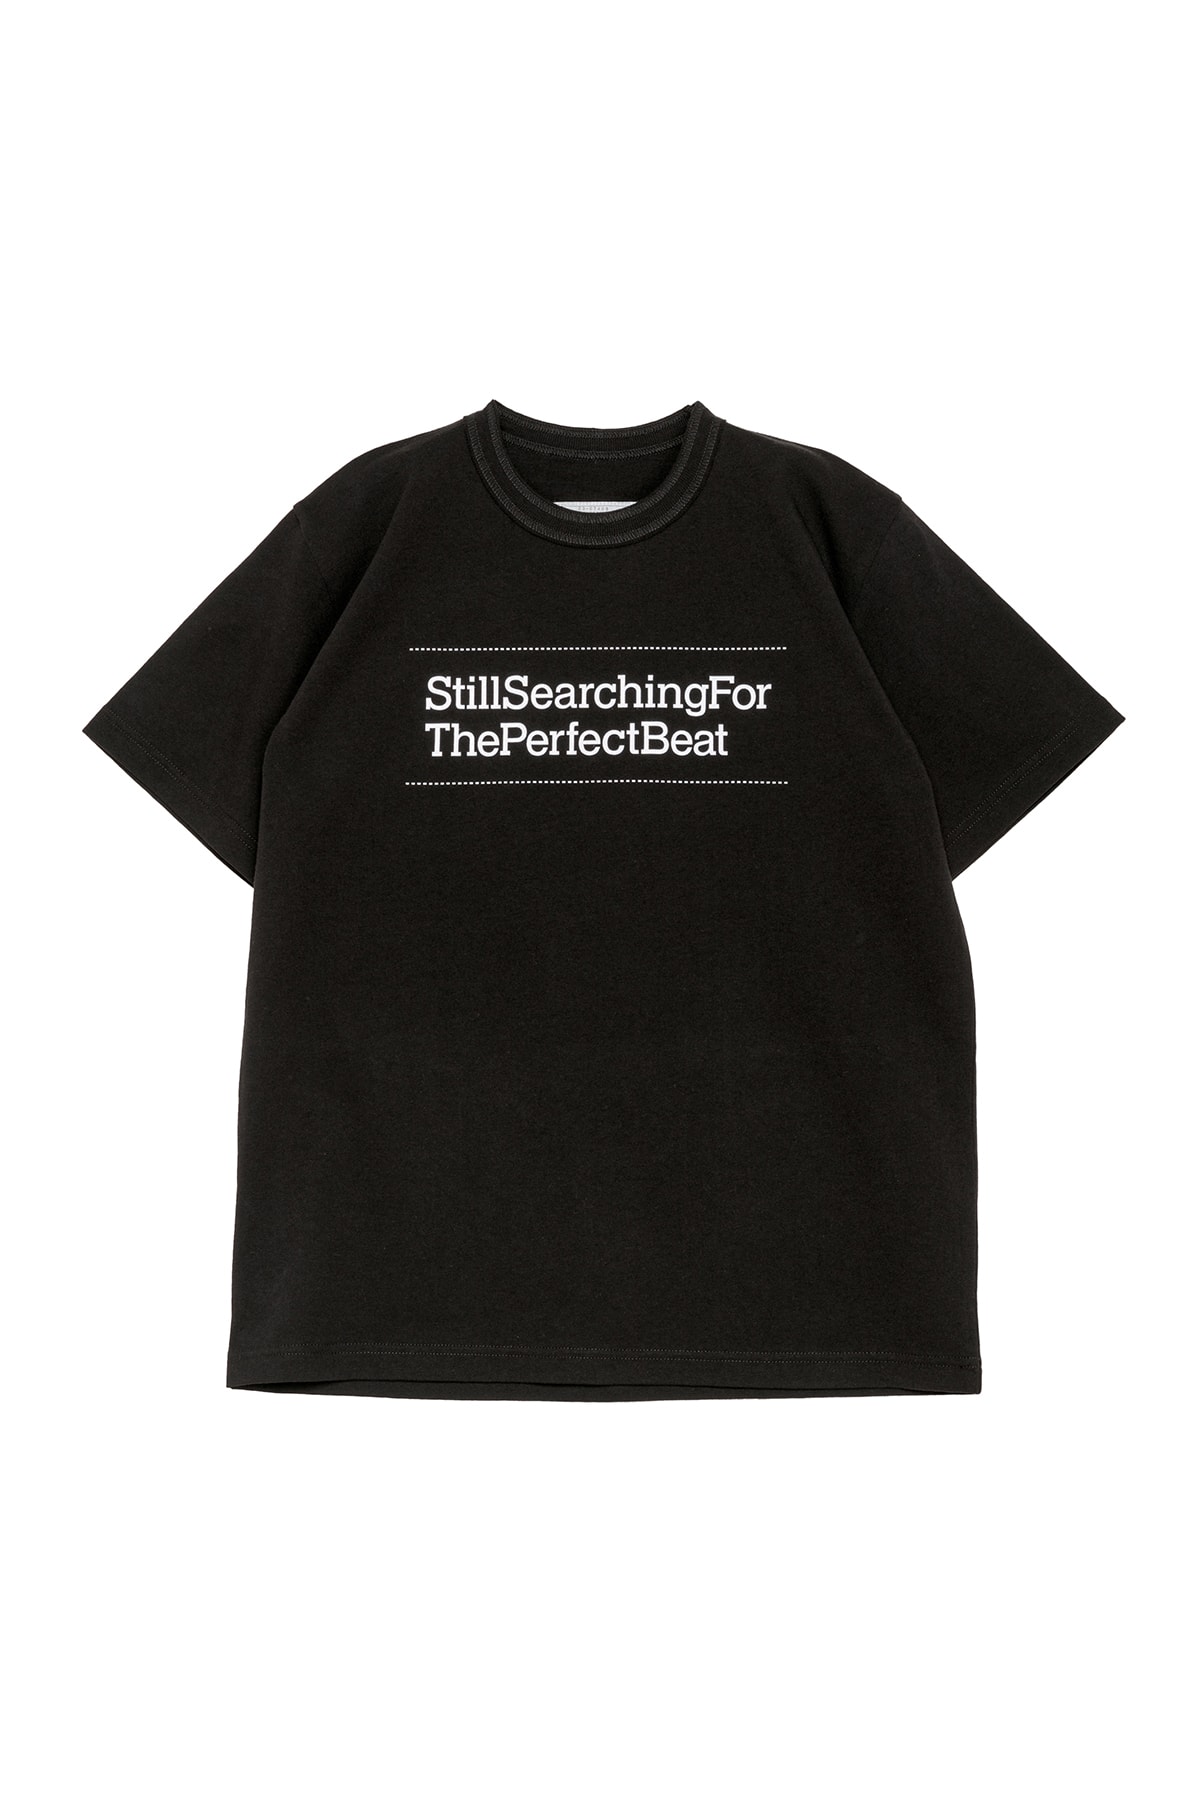 サカイからジャイルス・ピーターソンの来日ツアー記念Tシャツが発売 sacai  Gilles Peterson Still Searching for The Perfect Beat japan tour T-shirts release info